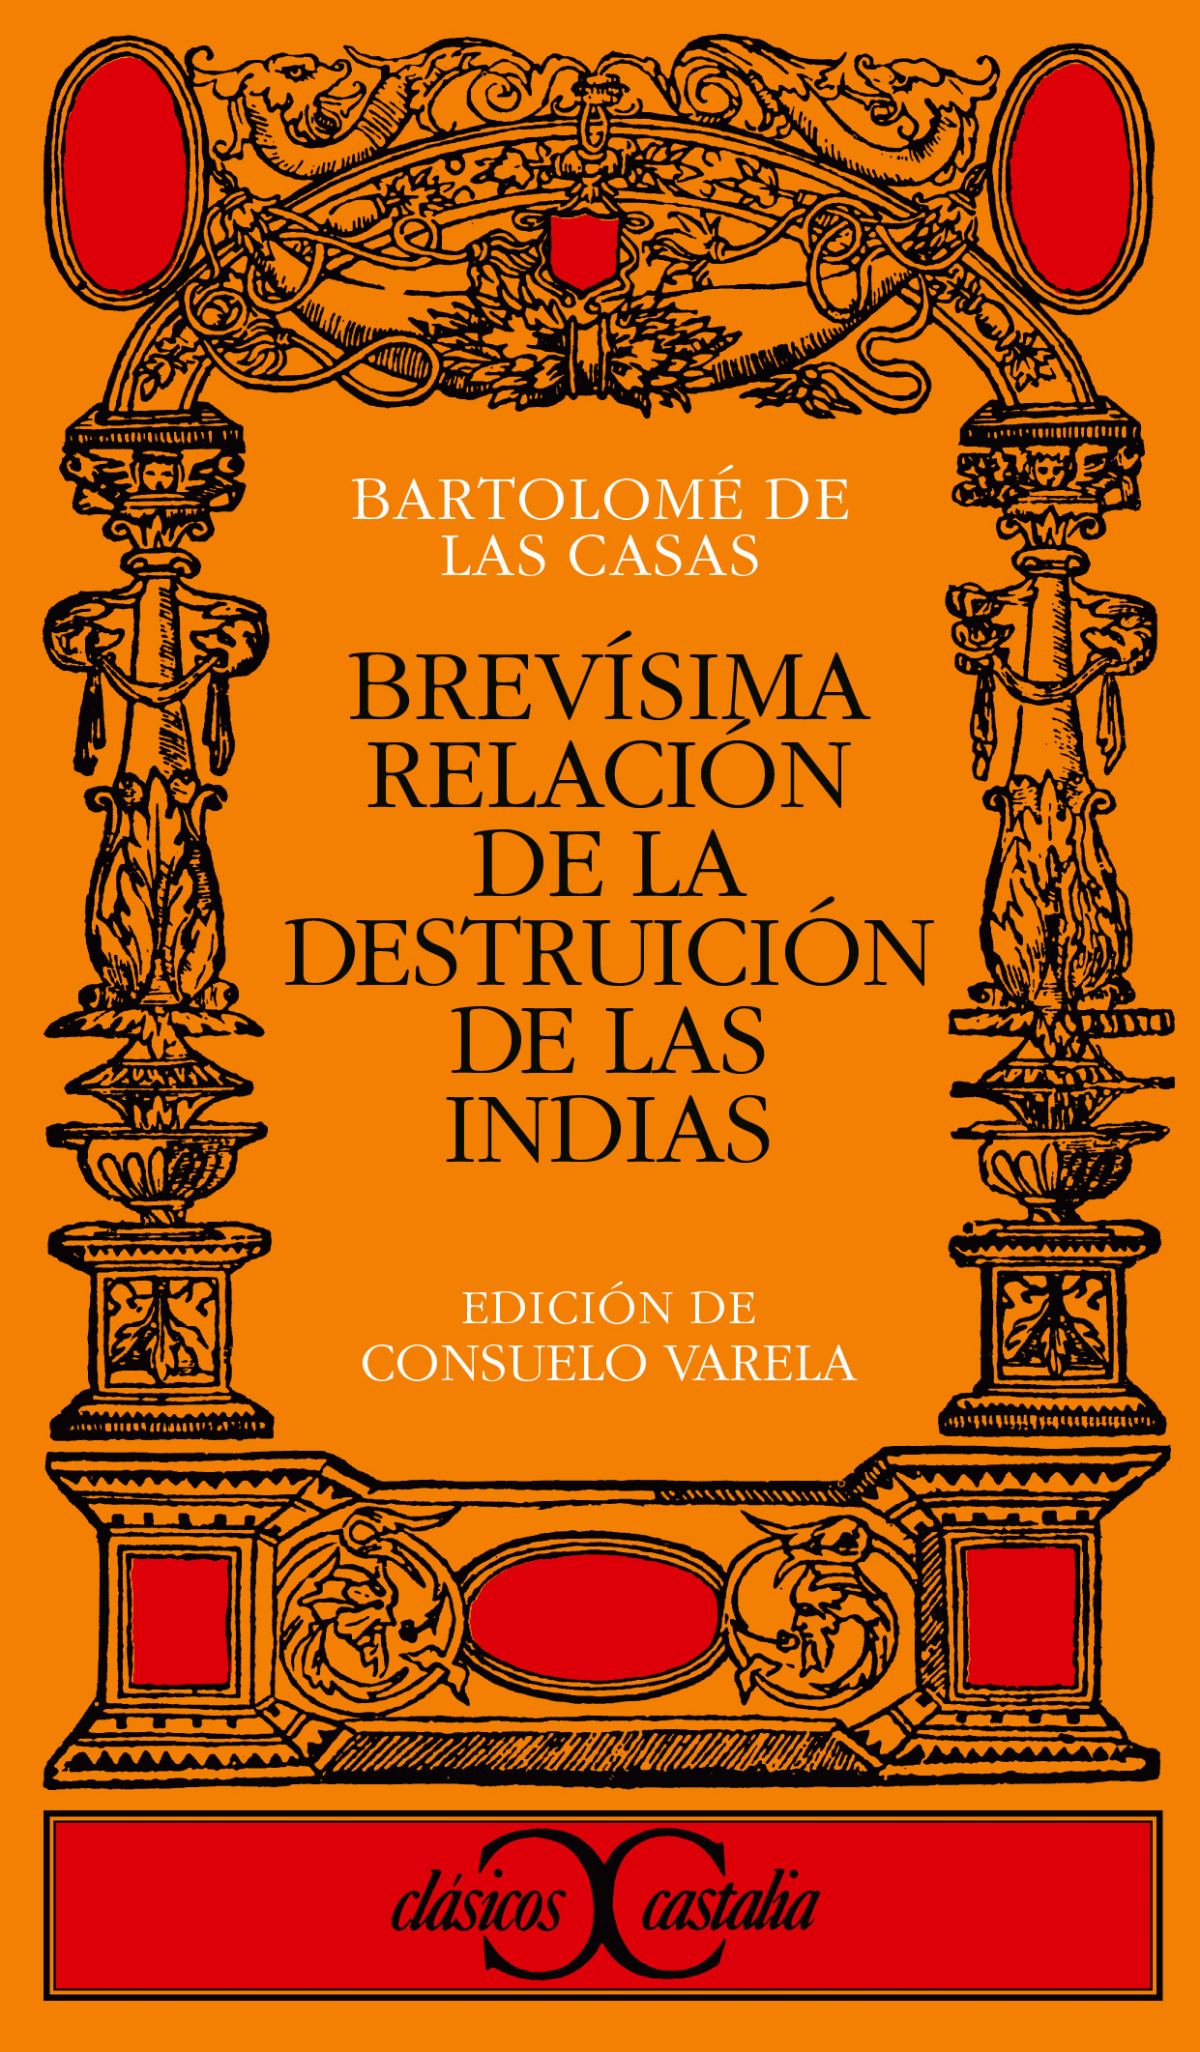 Brevisima relacion destrucion indias - De Las Casas